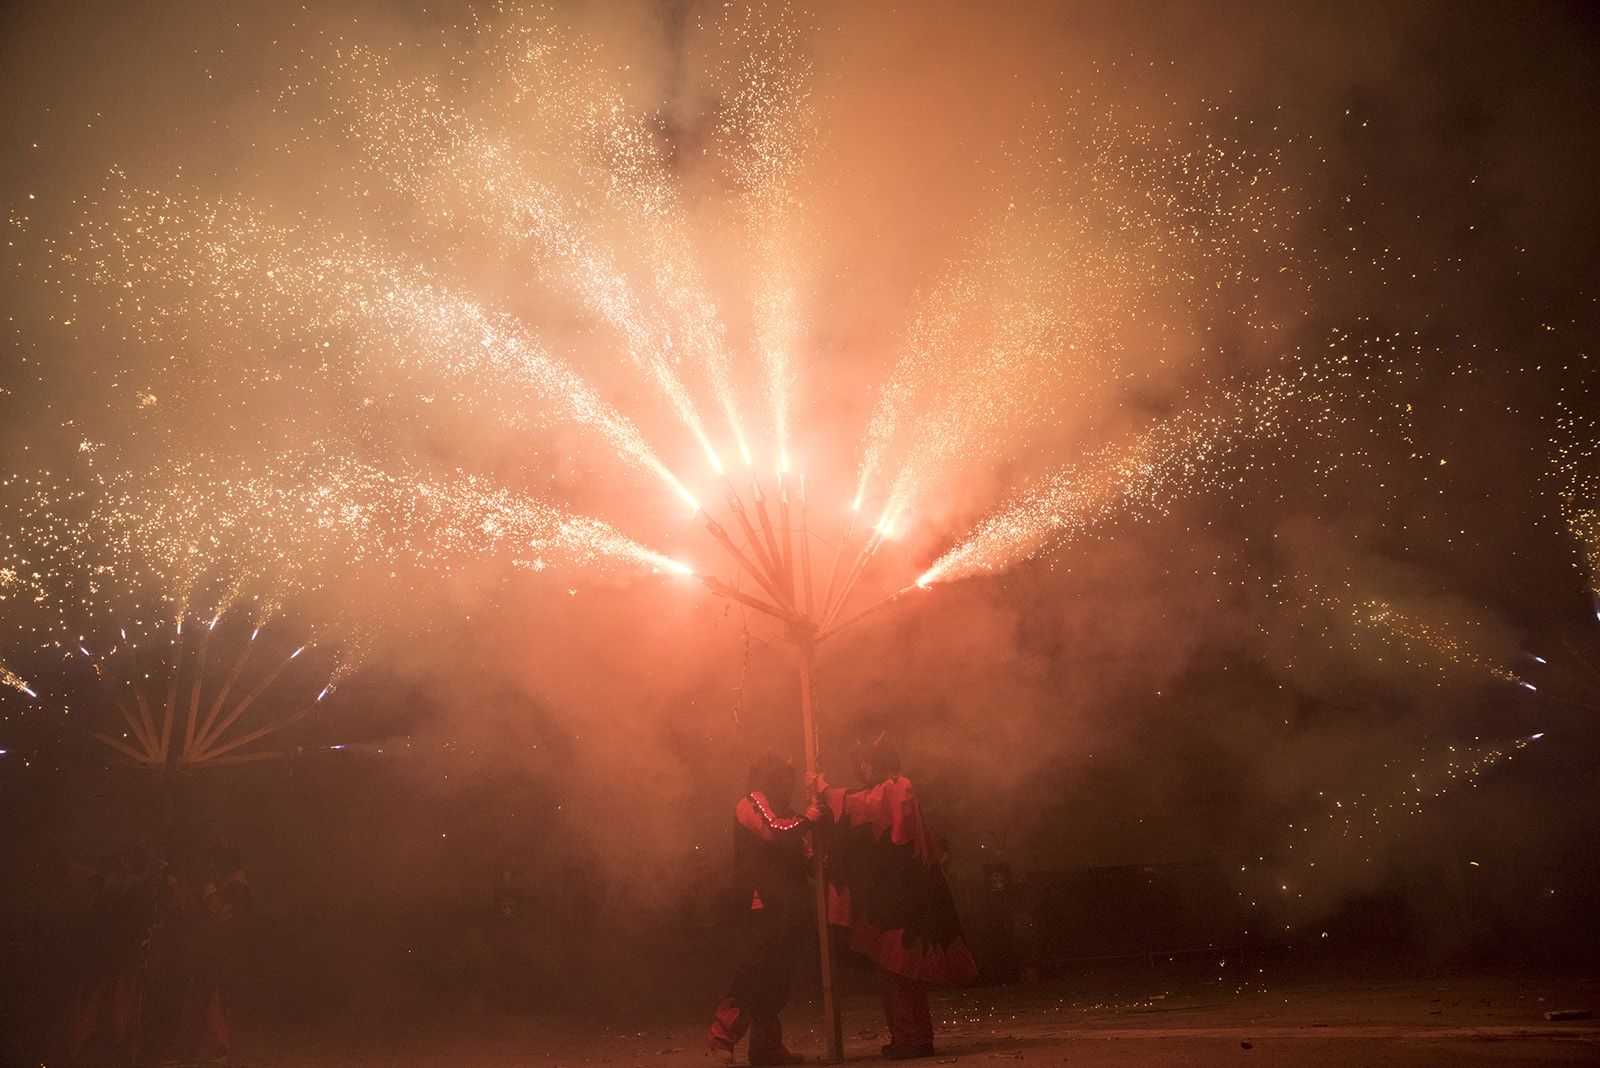 Versots i esclat de foc de Festa Major. Foto: Bernat Millet.